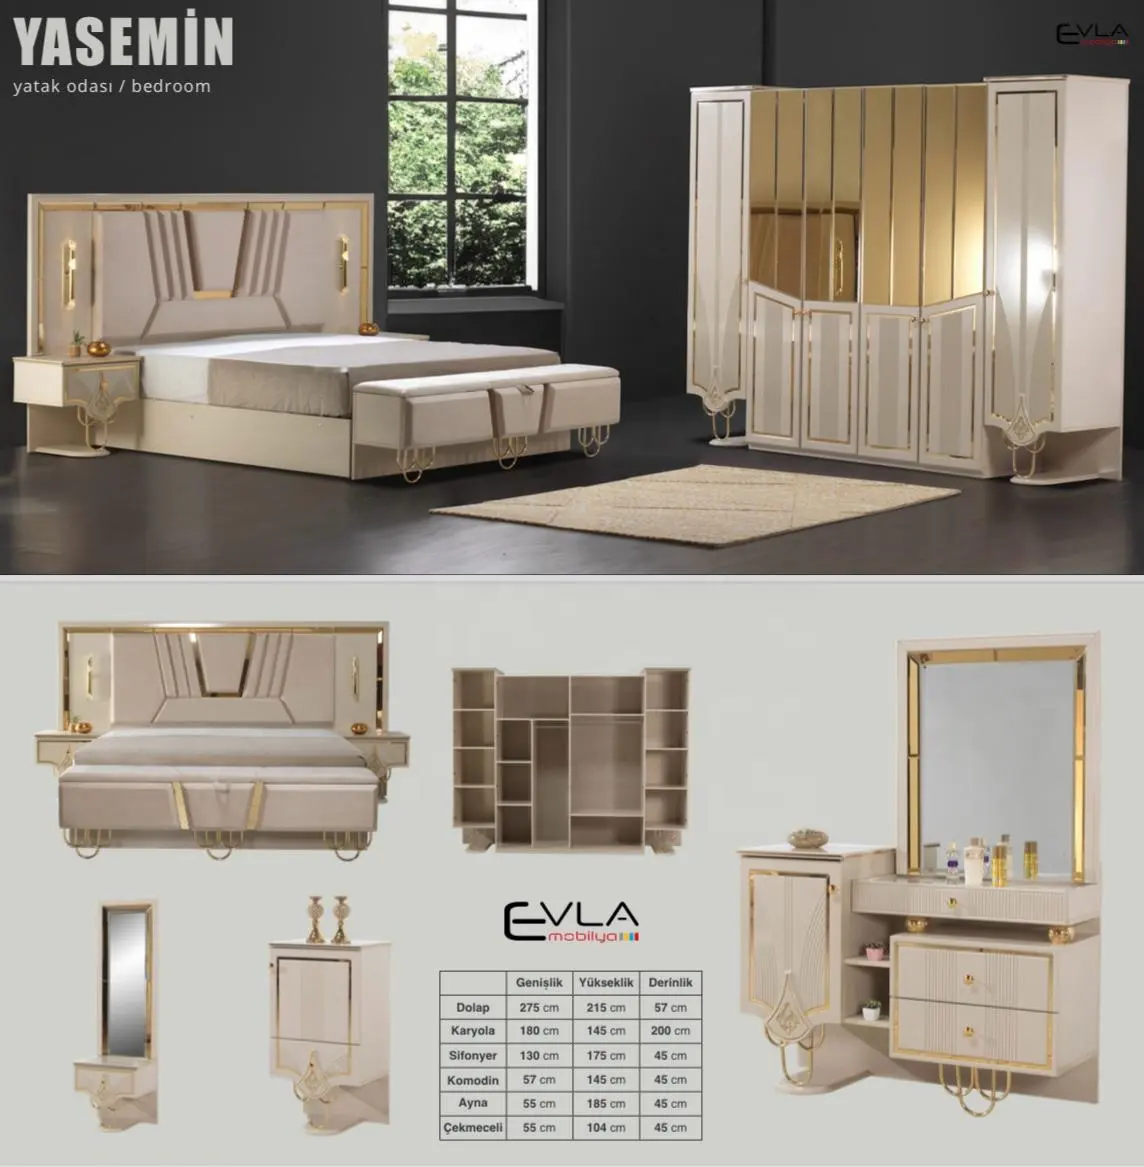 Juego de dormitorio de lujo Yasemin, cama King Queen, cabecero iluminado, armario con espejo, diseño turco, último modelo